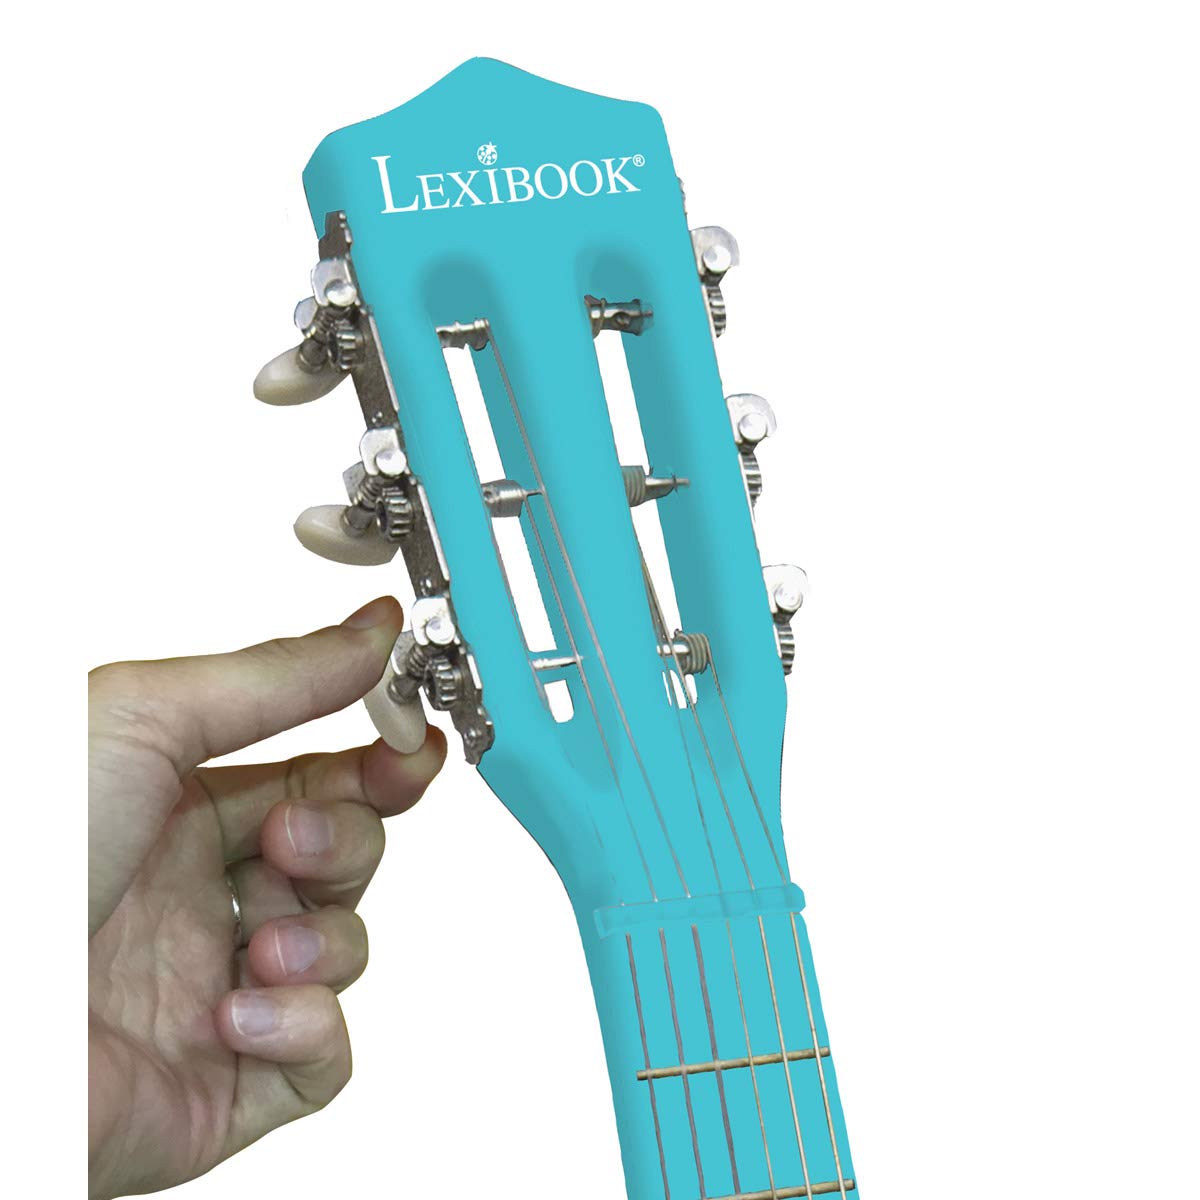 Les meilleures guitares pour enfant : guide d'achat comparatif - MAX2KDO